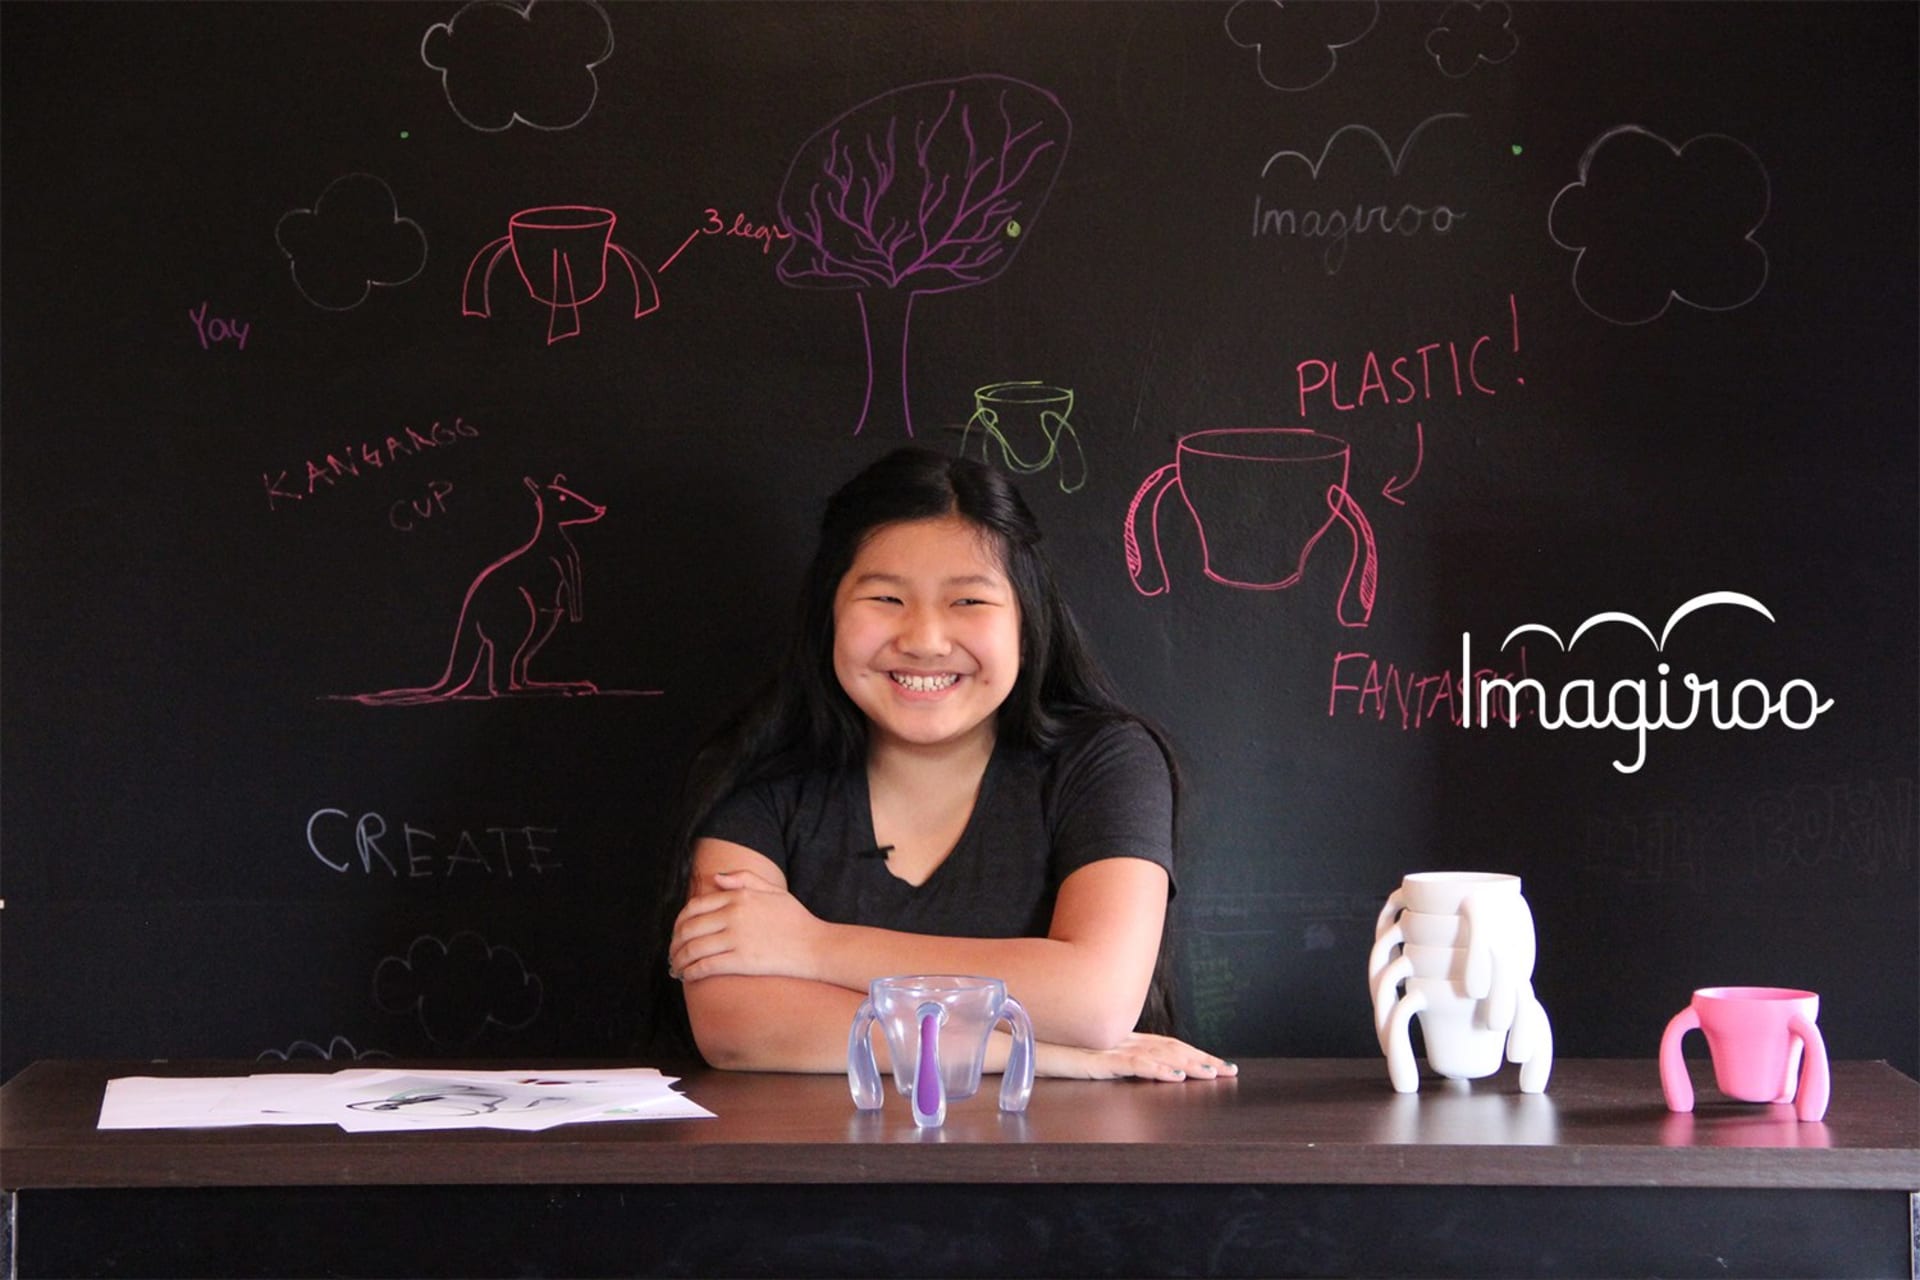 Dnes už šestnáctiletá Lili Born je inovační šéfkou společnosti Imagiroo.